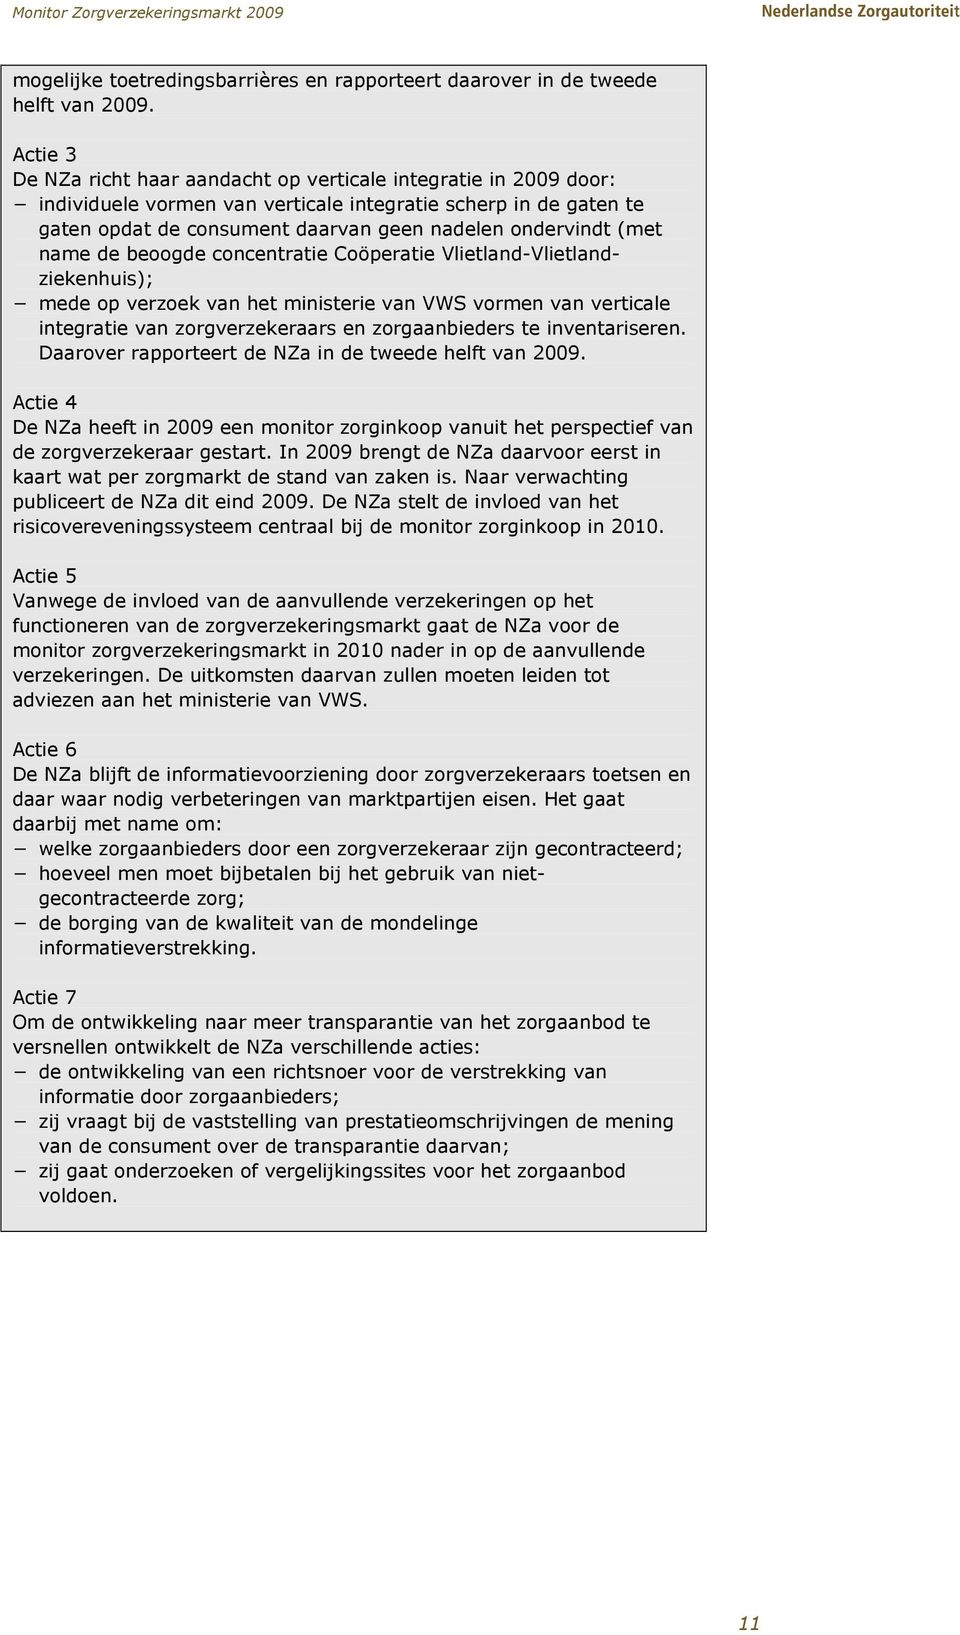 (met name de beoogde concentratie Coöperatie Vlietland-Vlietlandziekenhuis); mede op verzoek van het ministerie van VWS vormen van verticale integratie van zorgverzekeraars en zorgaanbieders te